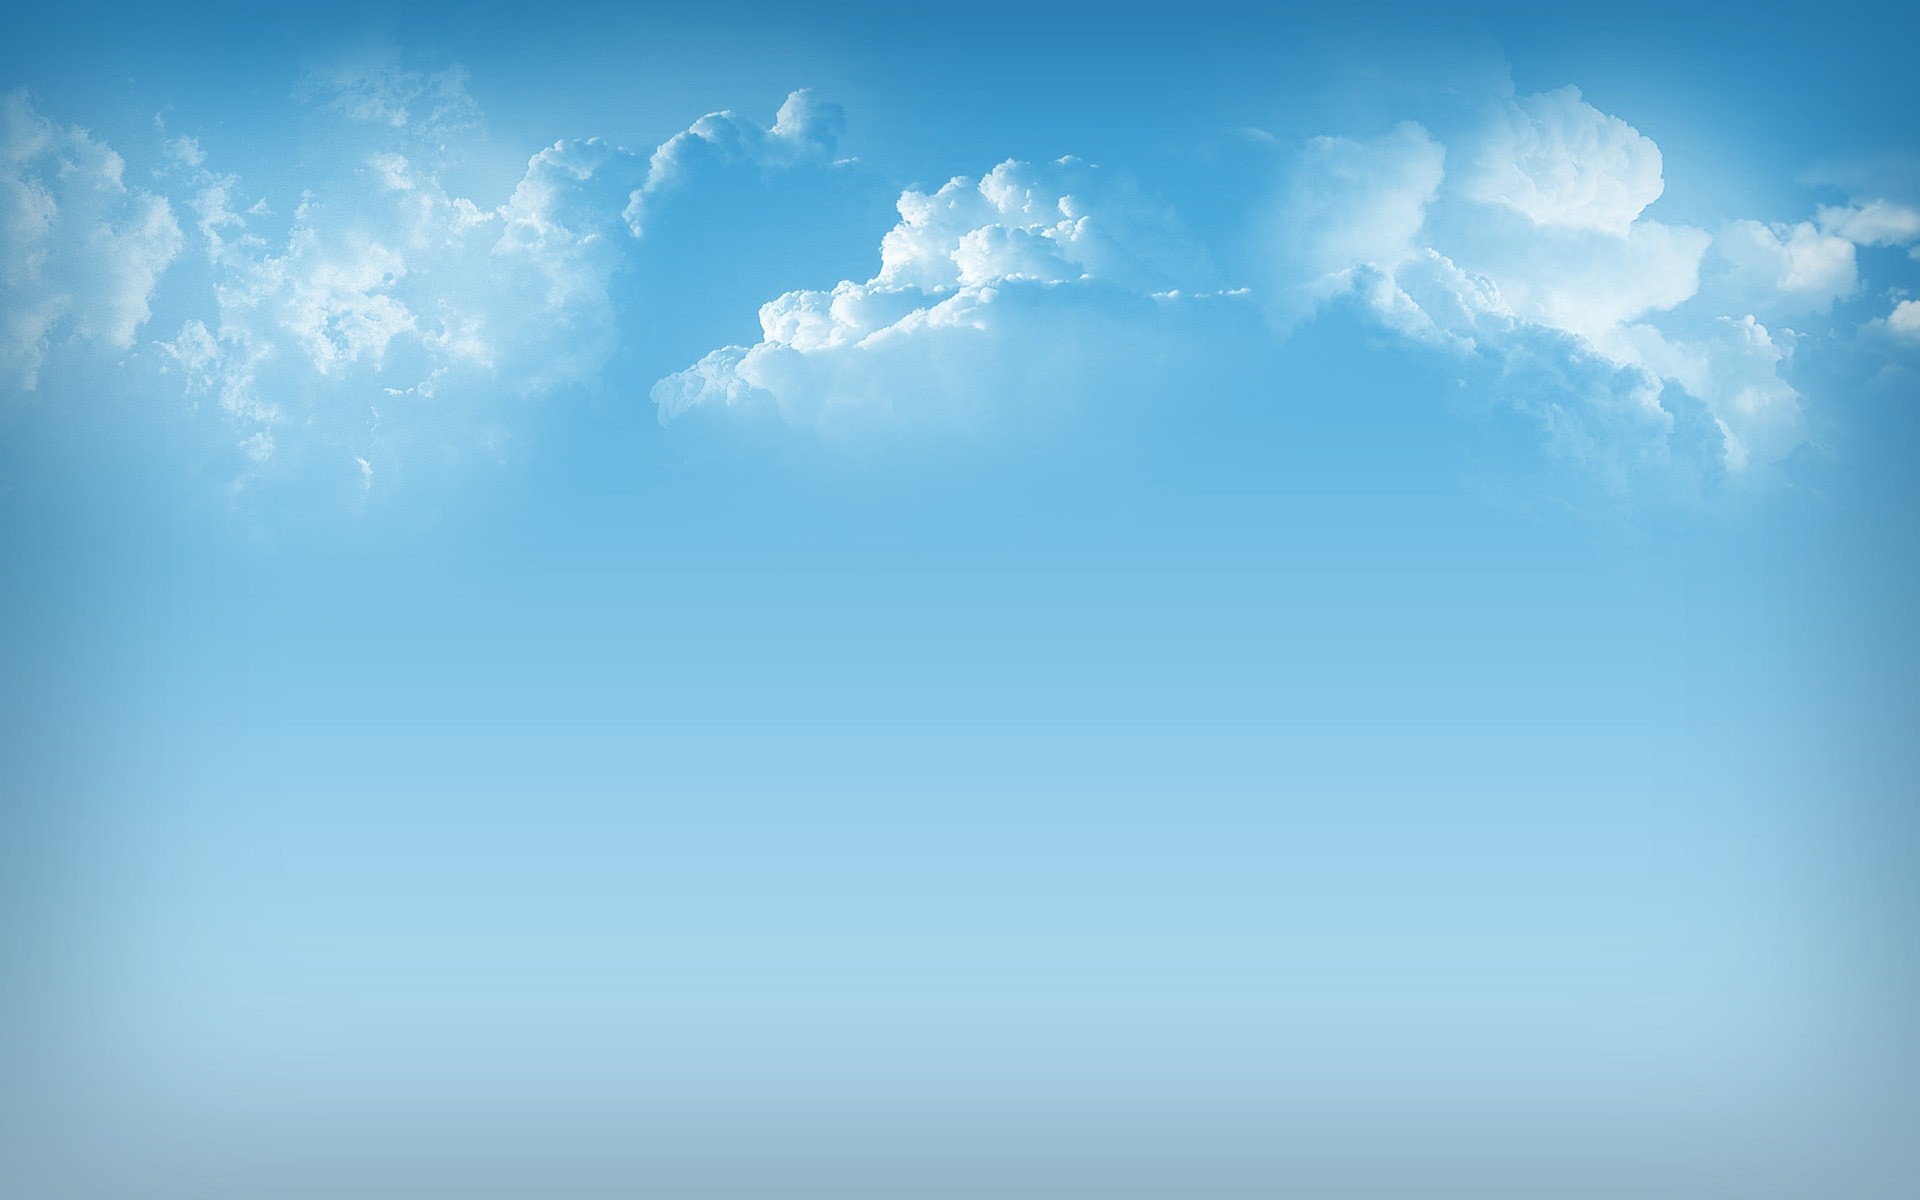 космос небо природа рабочего стола погода свет солнце хорошую погоду пуховый аннотация на открытом воздухе метеорология небо цвет пейзаж облако лето атмосфера облака